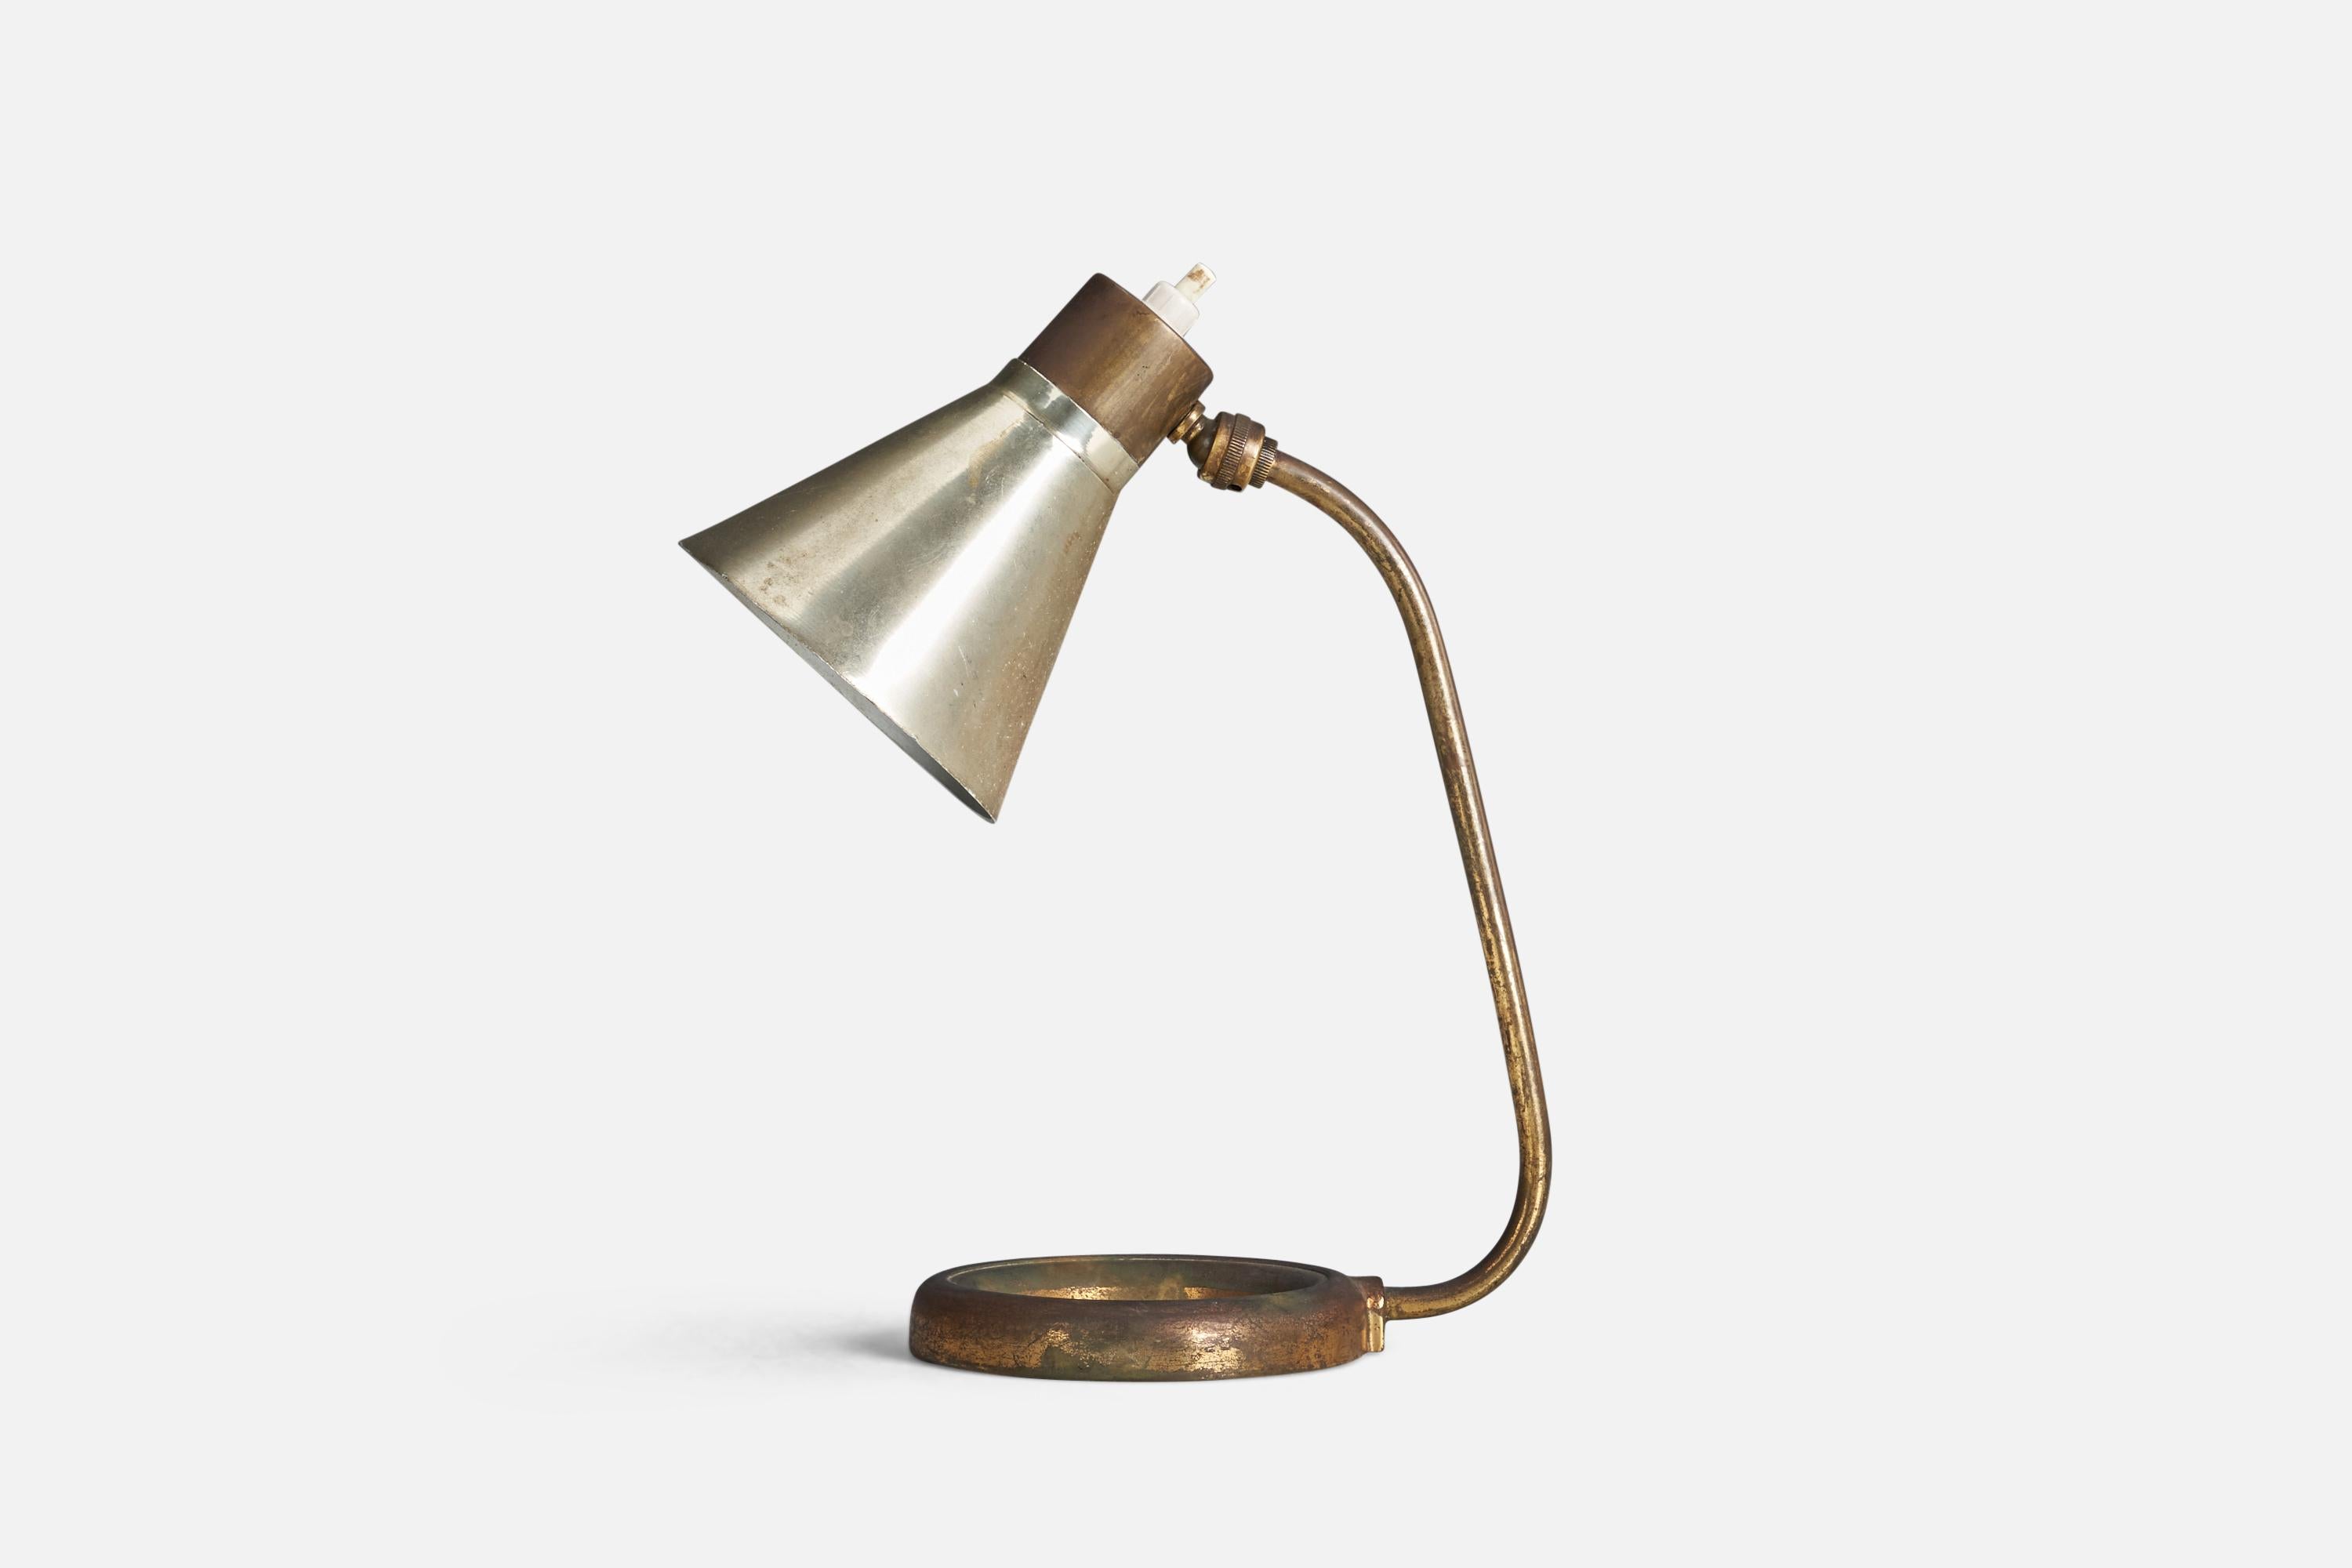 Lampe de table en laiton et en métal conçue et produite par un designer italien, Italie, années 1940.

La douille accepte les ampoules standard E-26 à culot moyen.

Il n'y a pas de puissance maximale indiquée sur le luminaire.